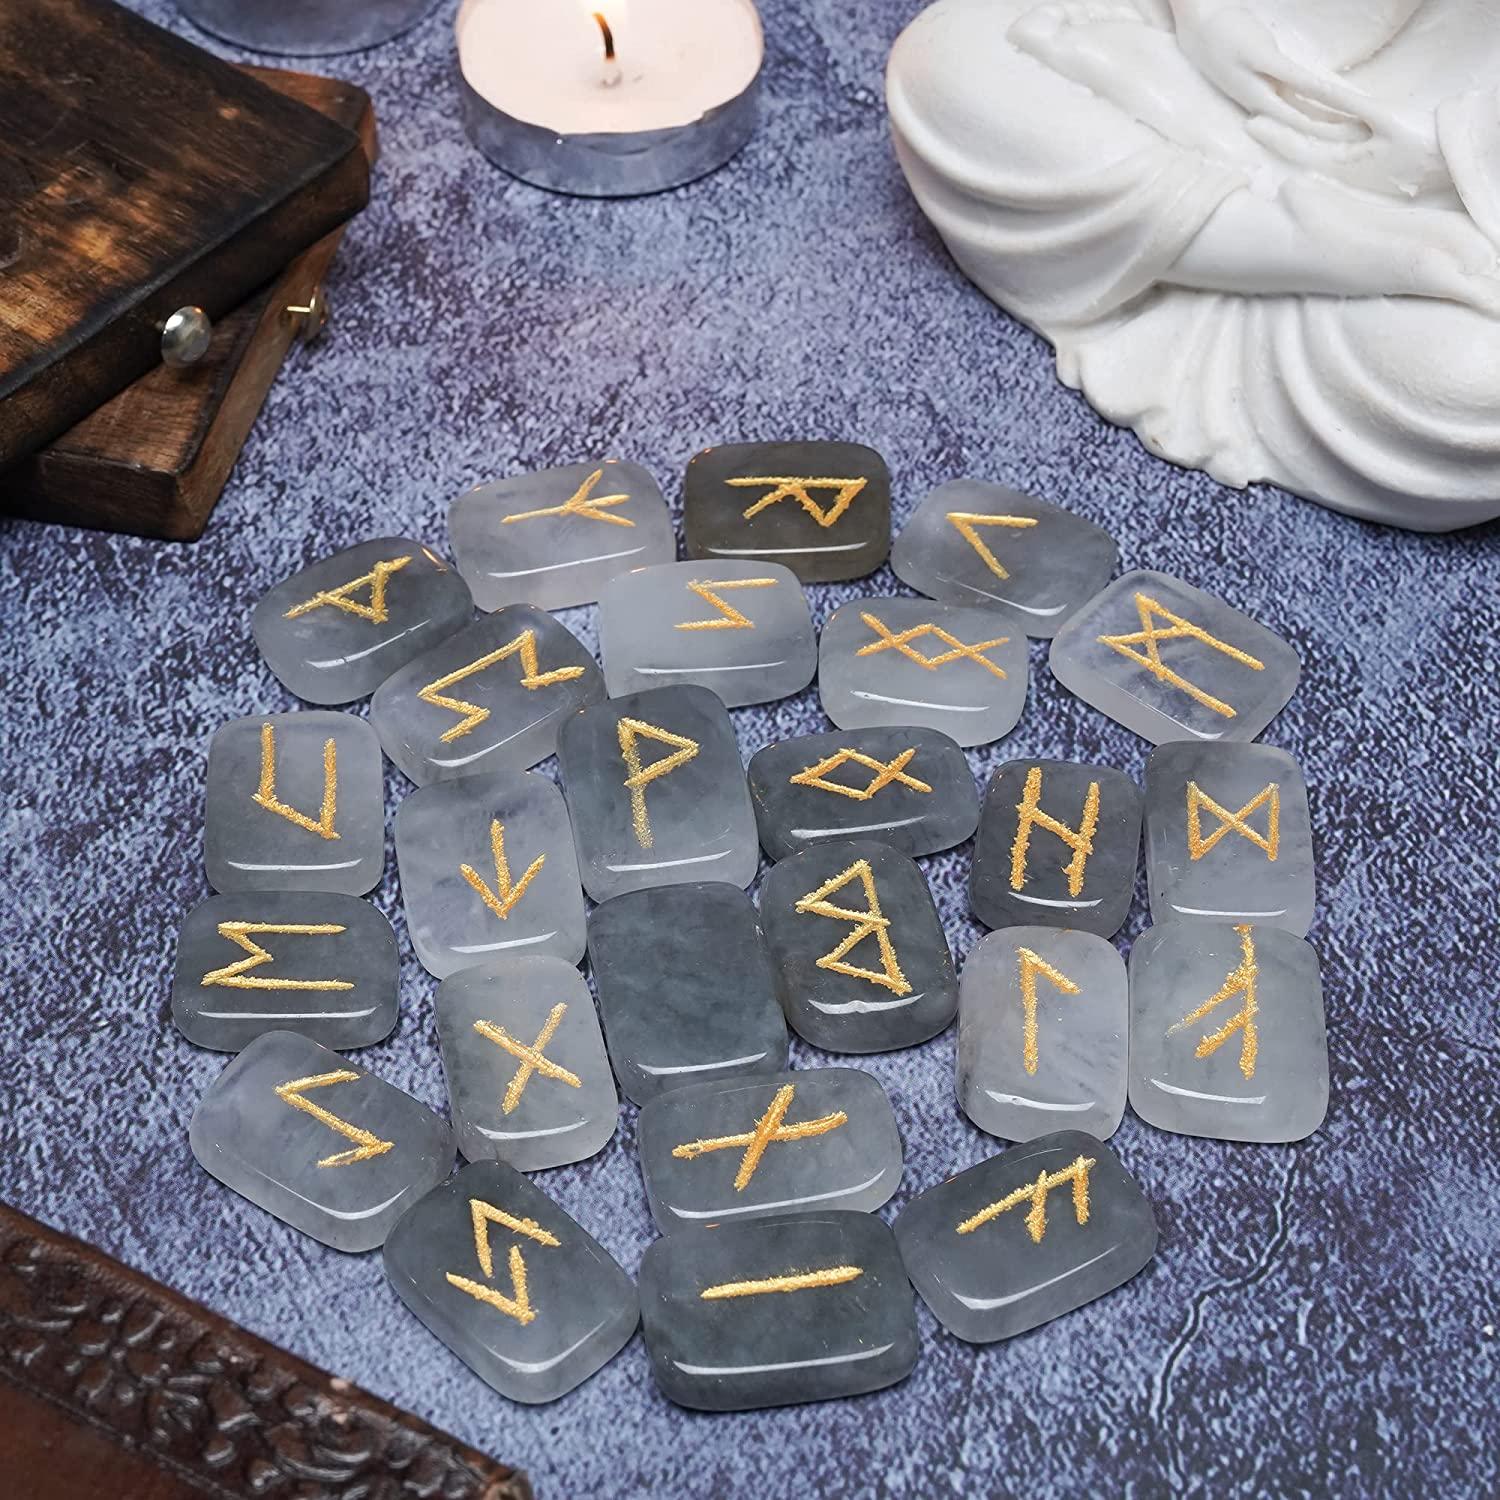 Moss Agate Rune Stones, Spiritual Stones, Rune Stone Symbols, Rune  Gemstones, Good Luck Runes, Reiki Stones RNMA-15001 